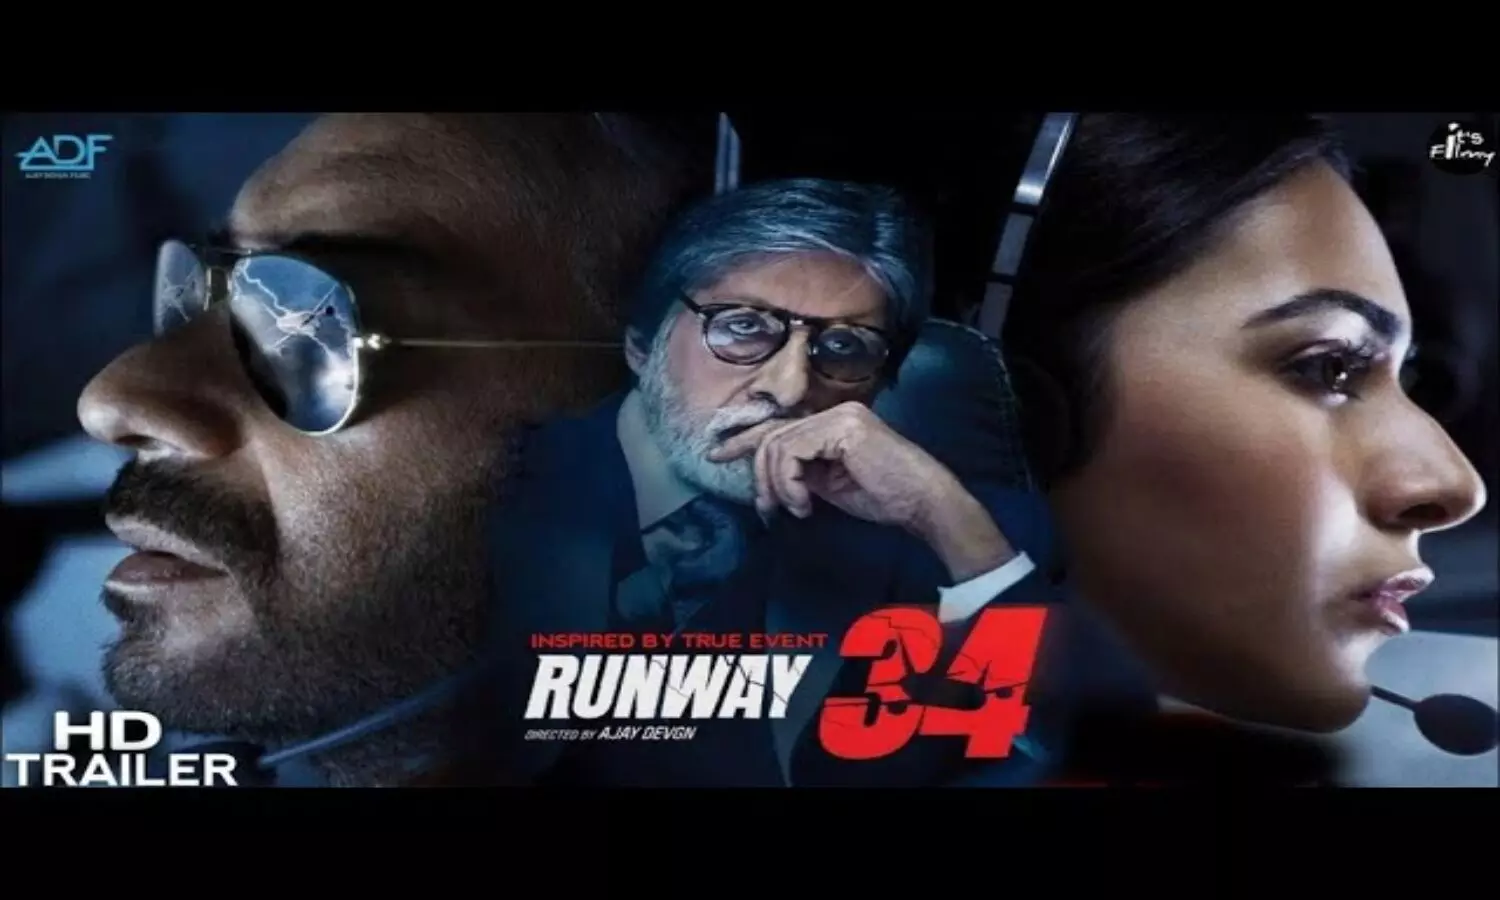 Movie Runway 34 Trailer Released